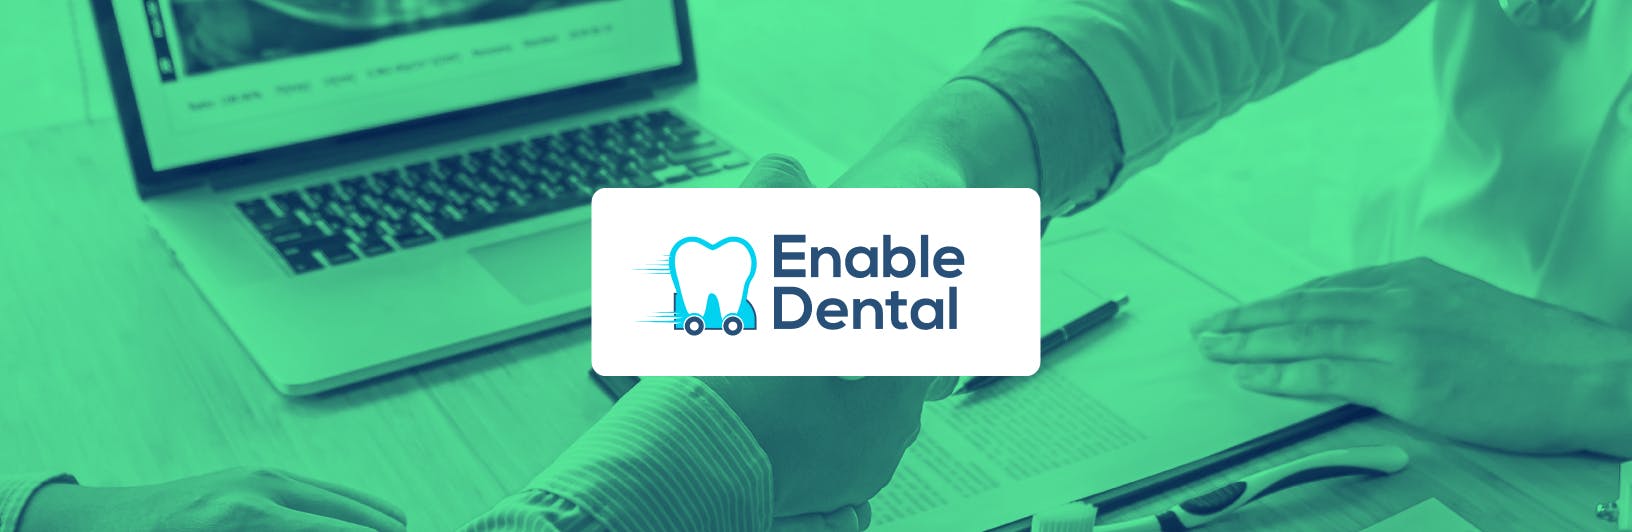 Press Release: Enable Dental